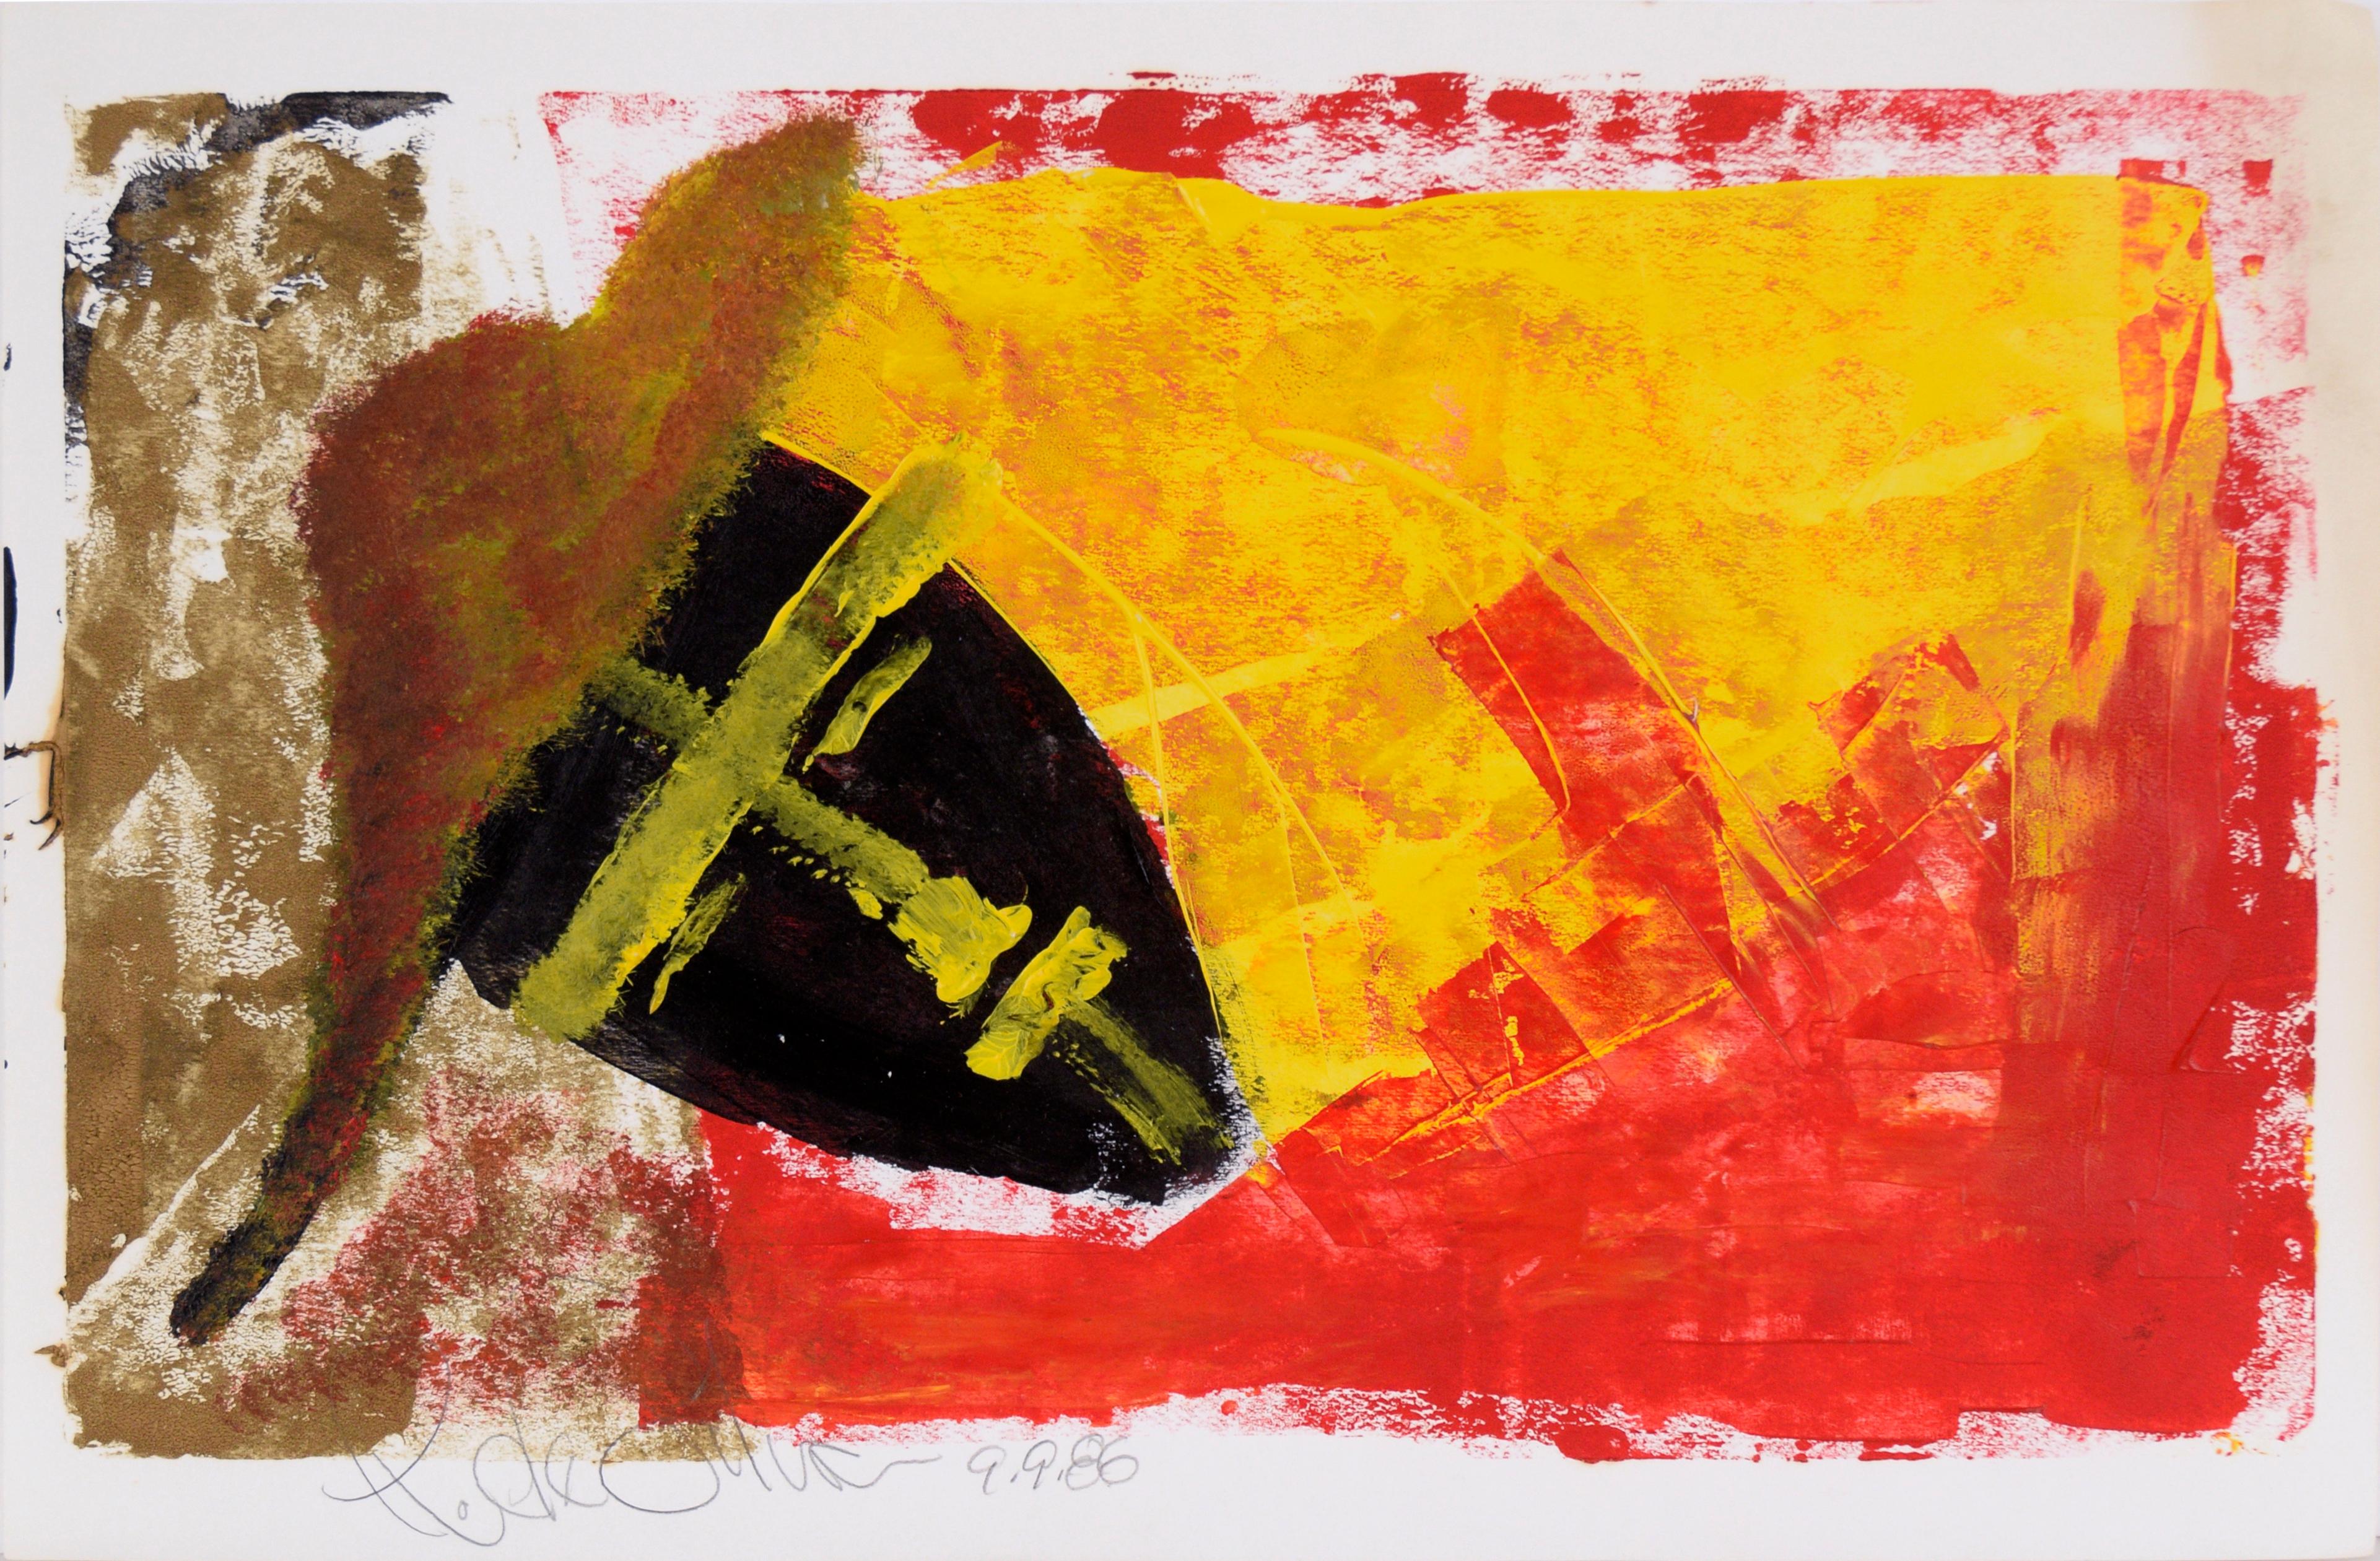 Abstract Painting Ricardo de Silva - Sombrero dans le masque de fer - Expressionniste abstrait géométrique en acrylique sur papier